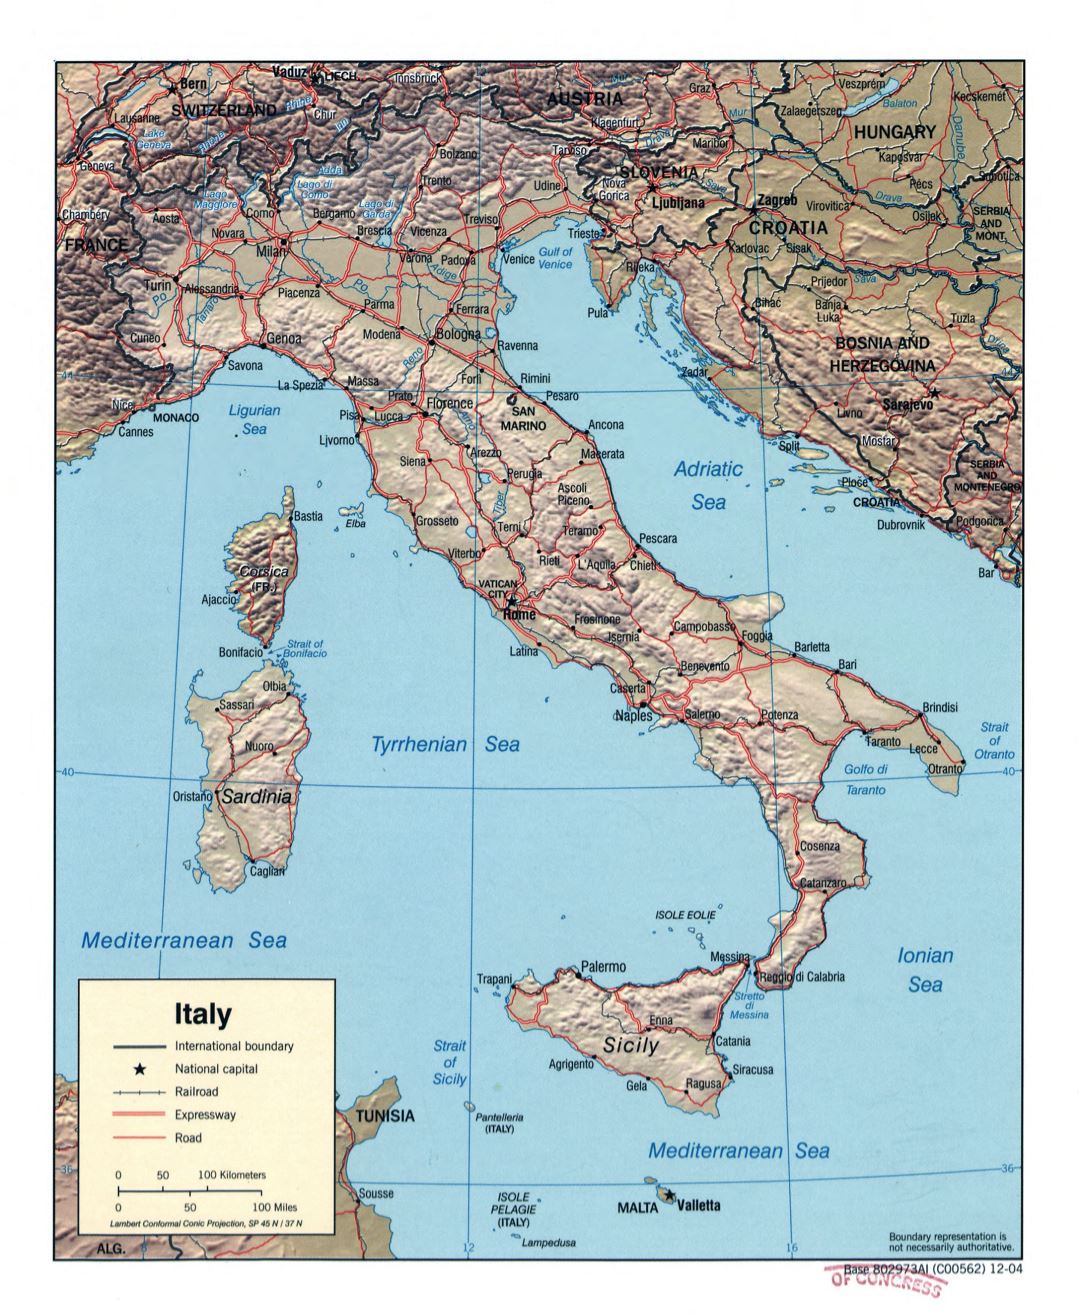 Mapa político a gran escala de Italia, con alivio, carreteras, vías férreas y las principales ciudades - 2004